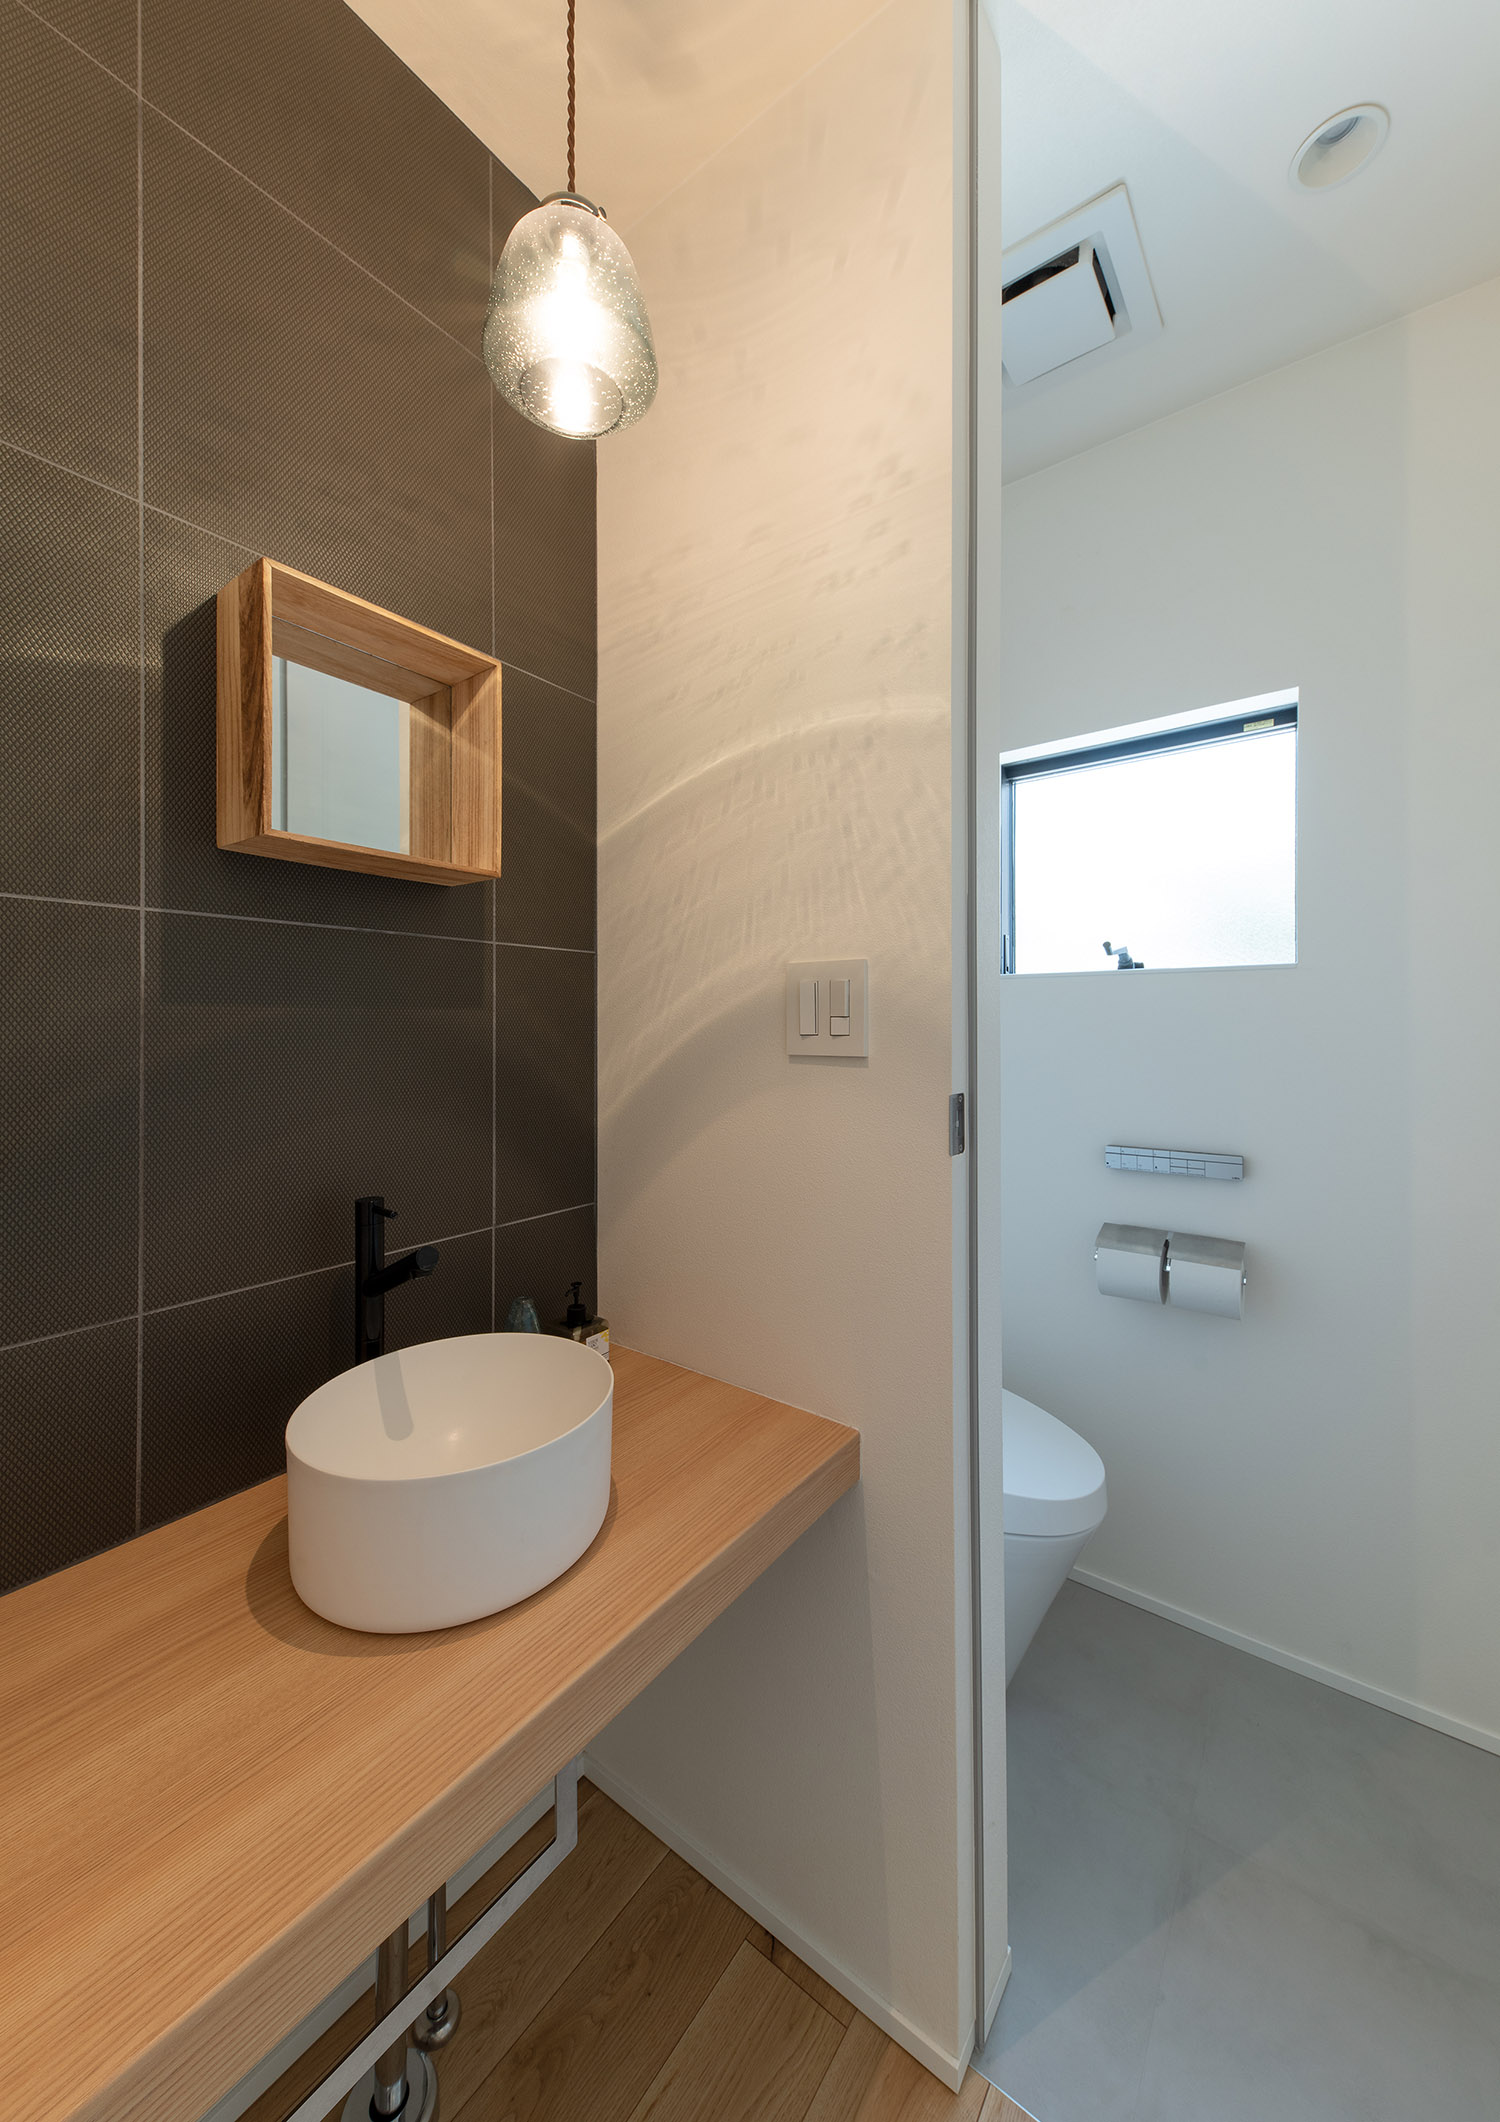 おしゃれな手洗いカウンターとトイレが扉で仕切られたデザイン・デザイン住宅